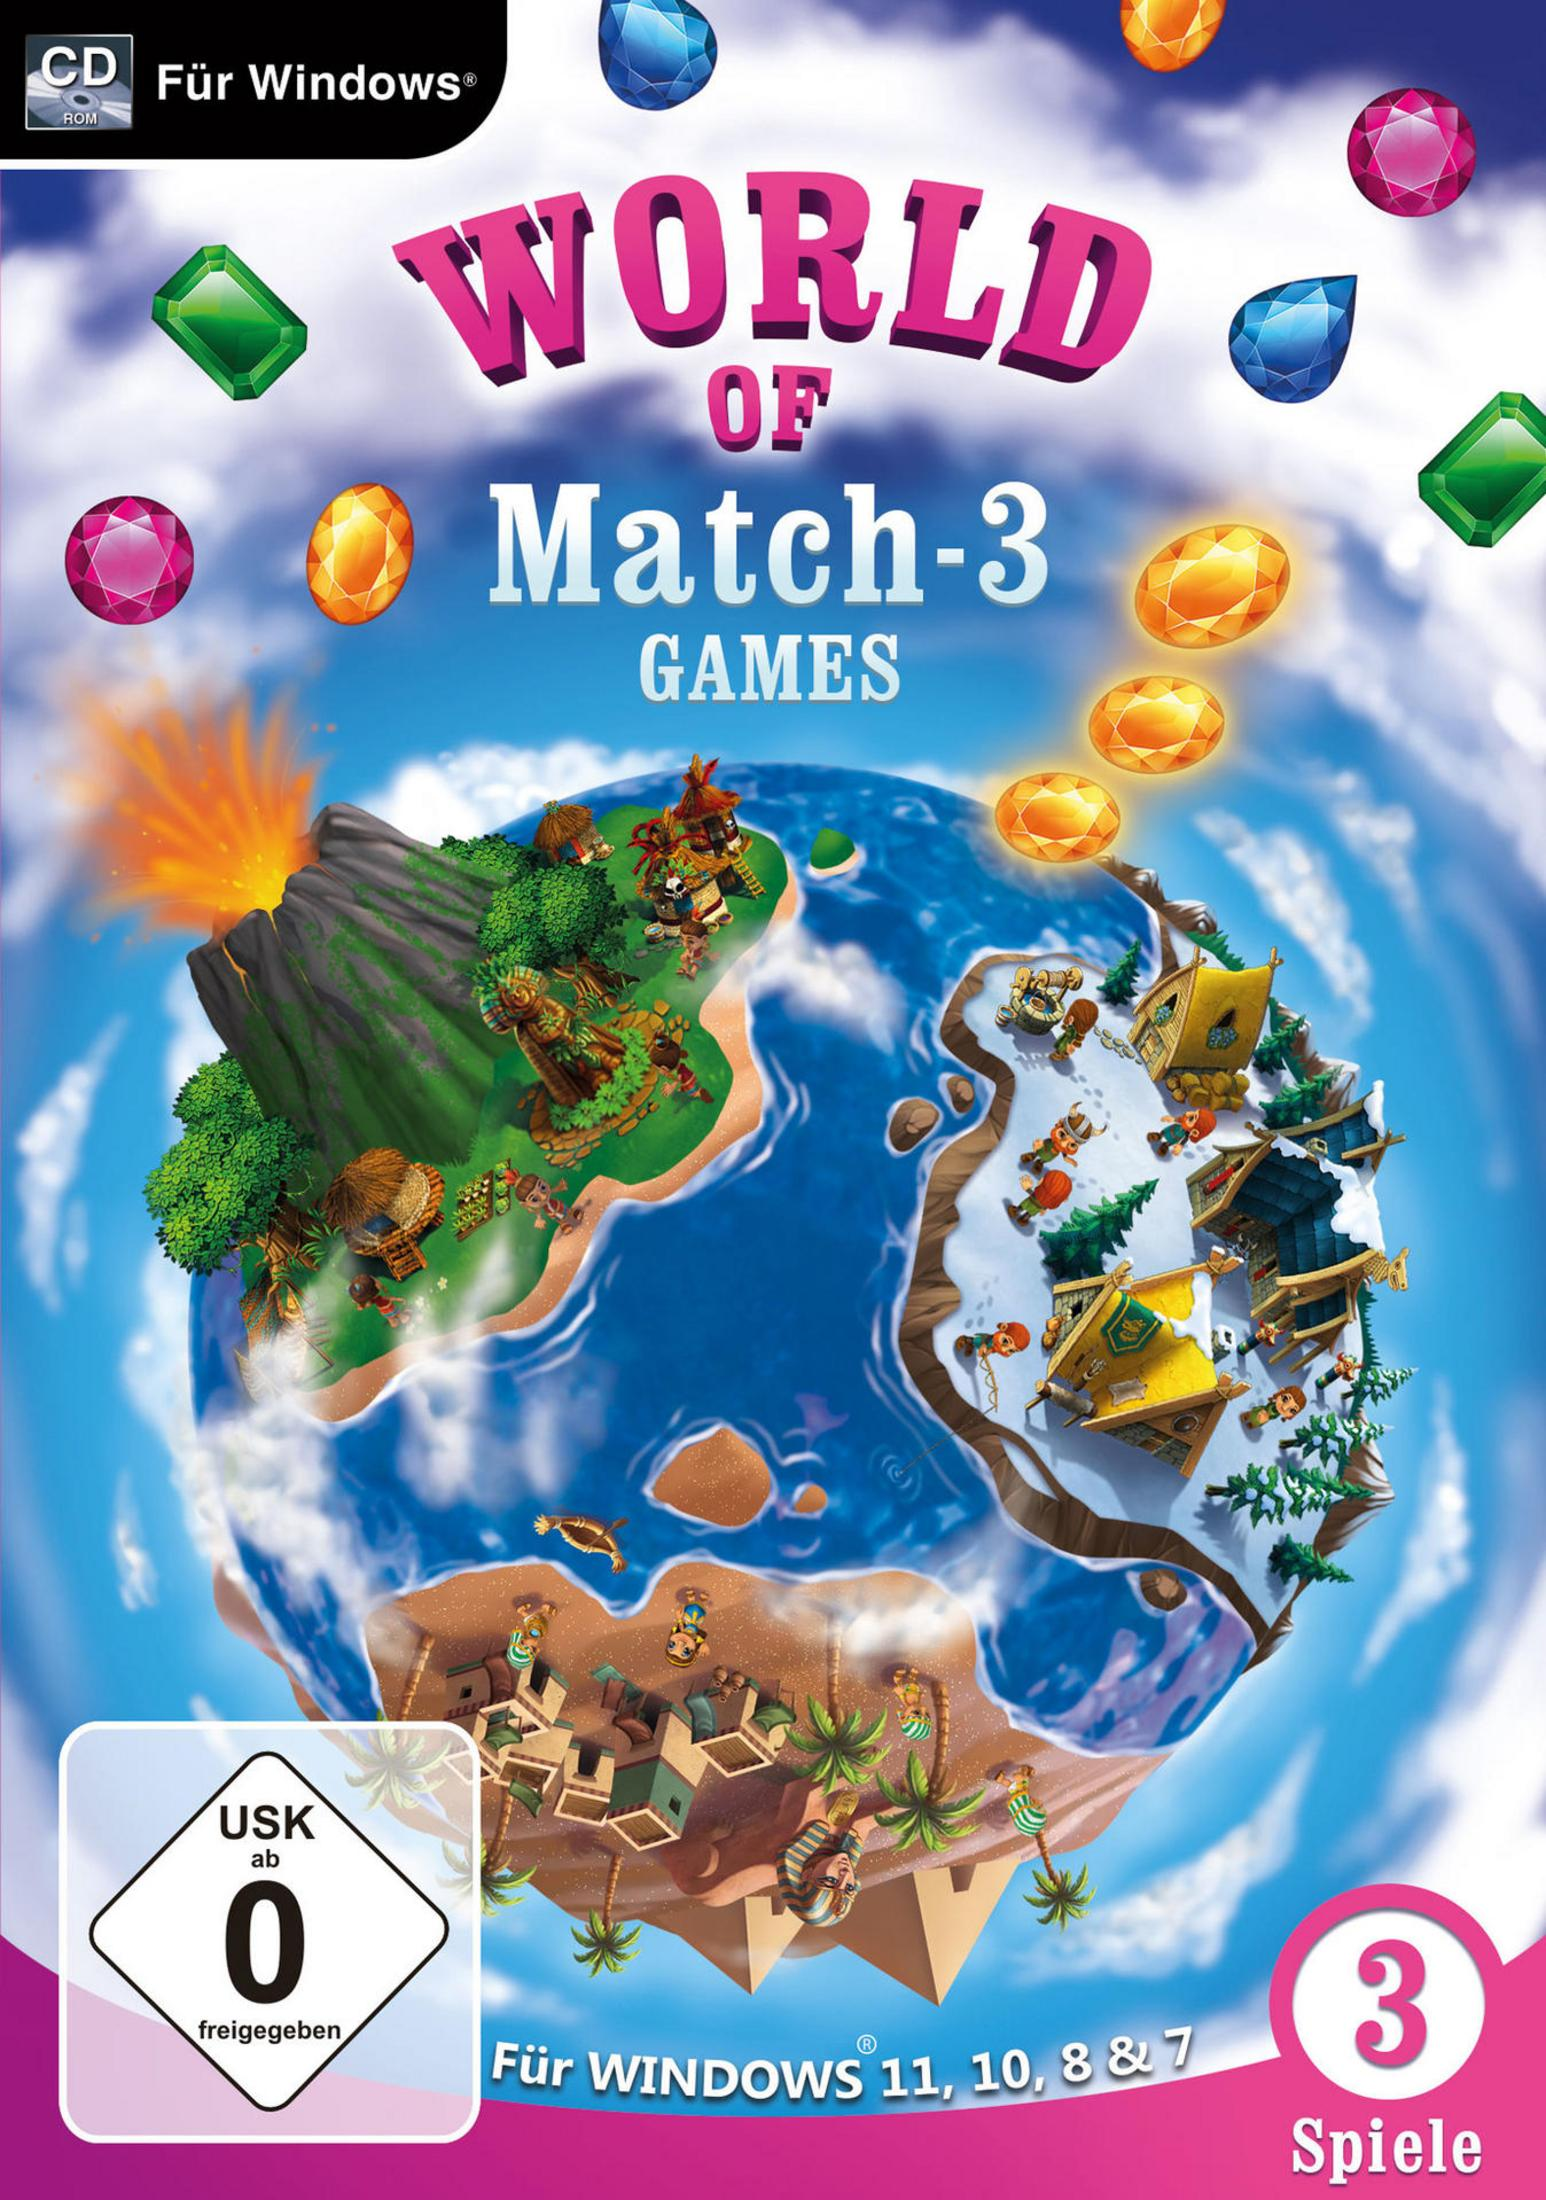 WORLD - WINDOWS11&10 MATCH GAMES [PC] 3 OF FÜR